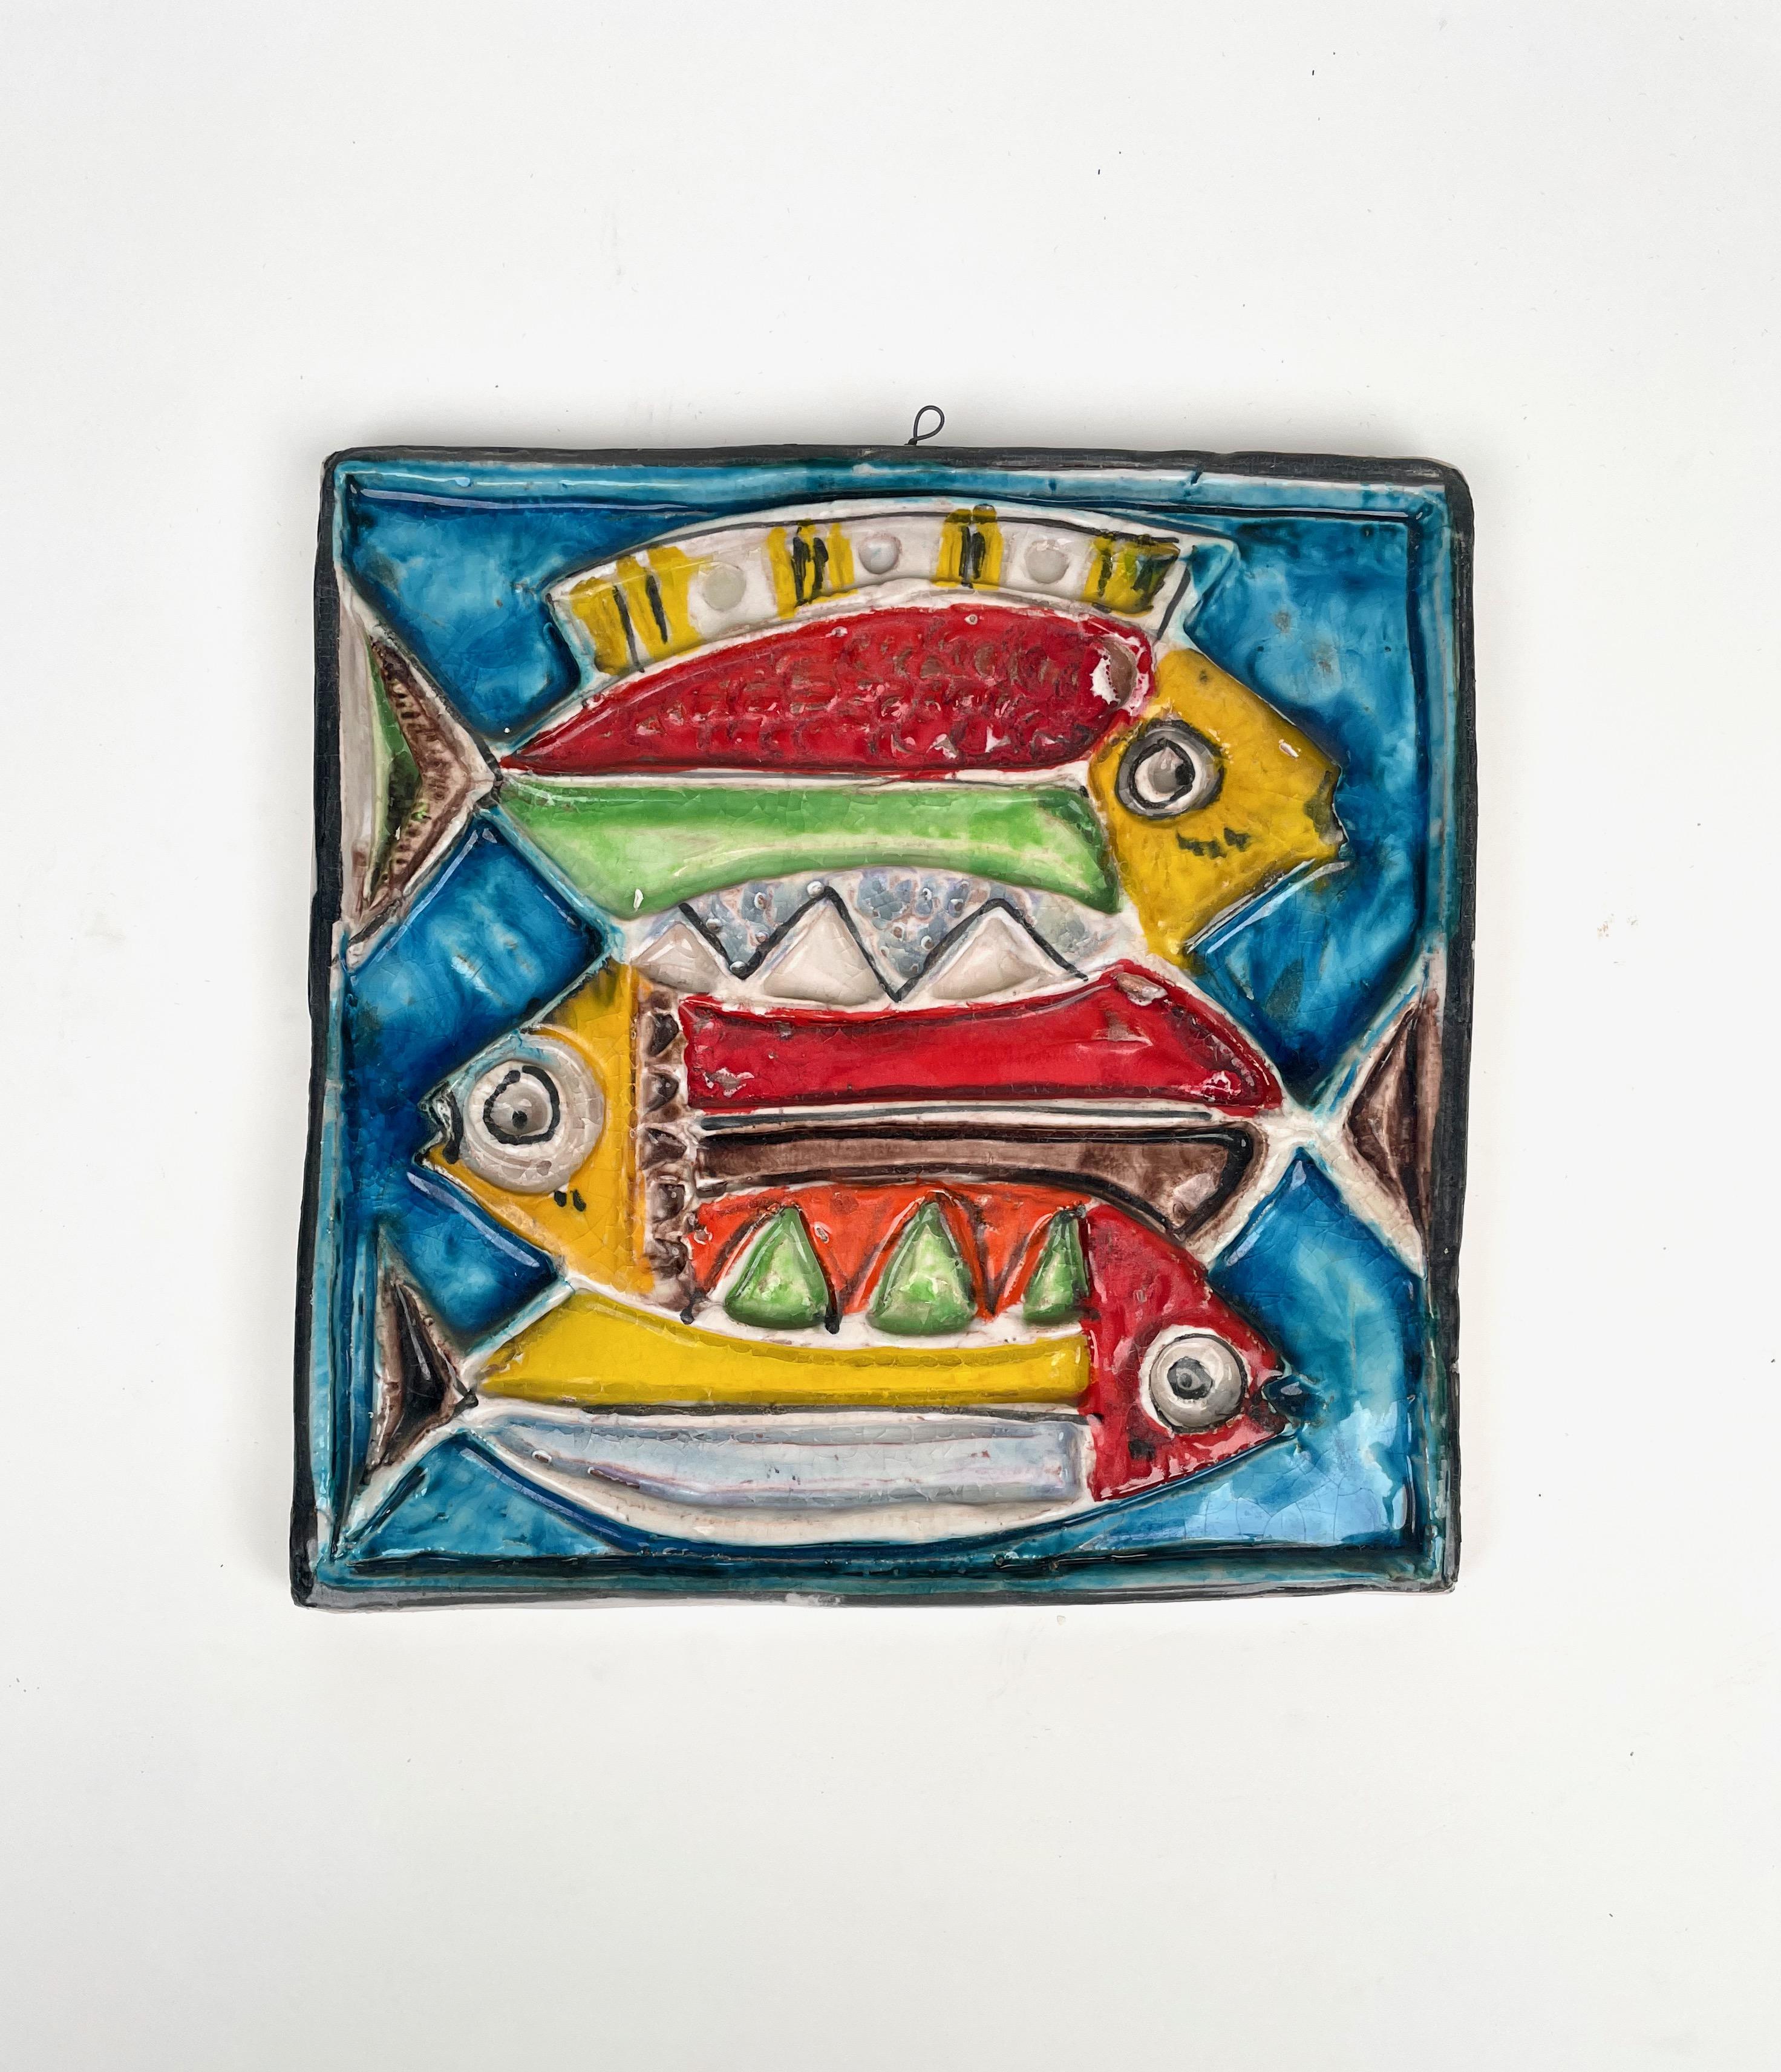 Schöner quadratischer Fliesenteller aus farbiger Keramik, der drei Fische darstellt, von dem italienischen Künstler Giovanni De Simone. 

Giovanni De Simone war ein großer sizilianischer Künstler aus Palermo, dessen Stil von den Gemälden Pablo